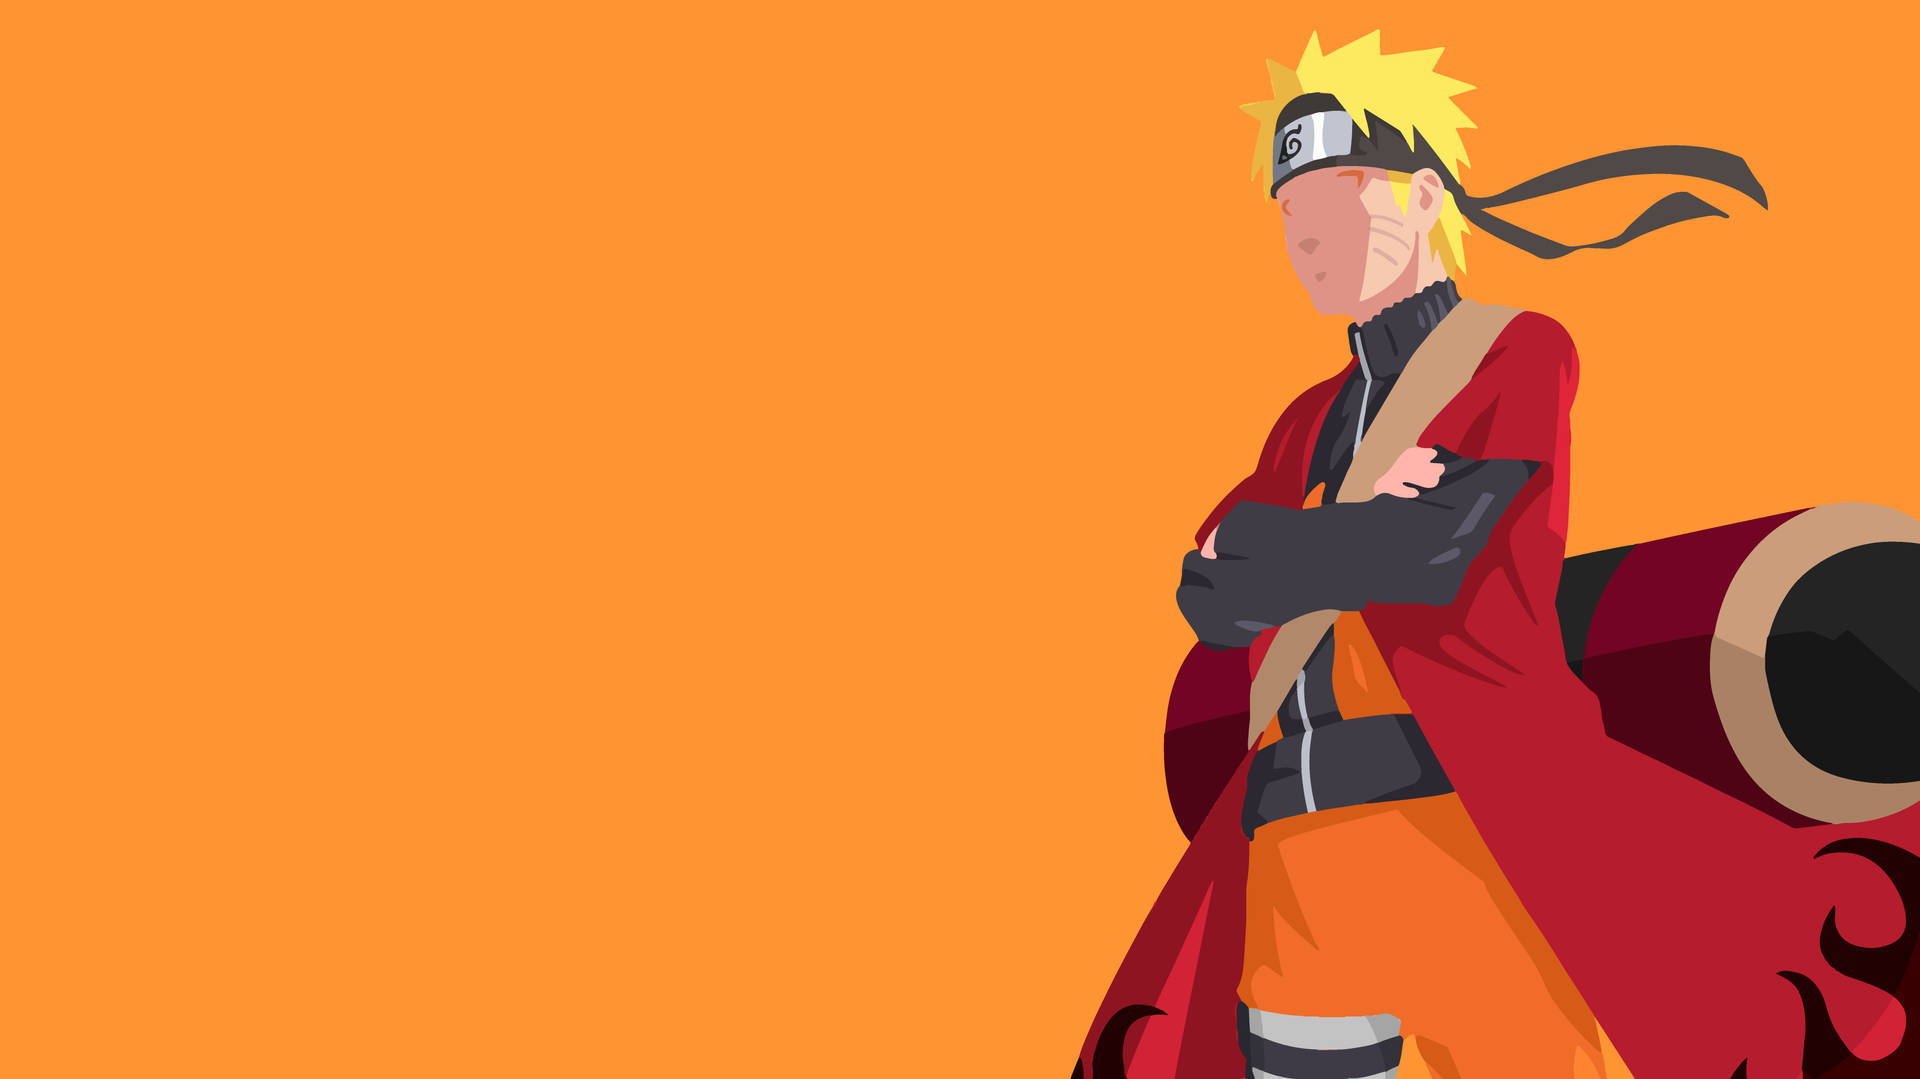 Sage Mode Naruto Wallpaper: Hình ảnh bộ phim Naruto với trang phục Sage Mode đầy ấn tượng đang chờ bạn khám phá. Tải ngay bộ ảnh nền Sage Mode Naruto để truyền tải sức mạnh và năng lượng tích cực cho máy tính của bạn.